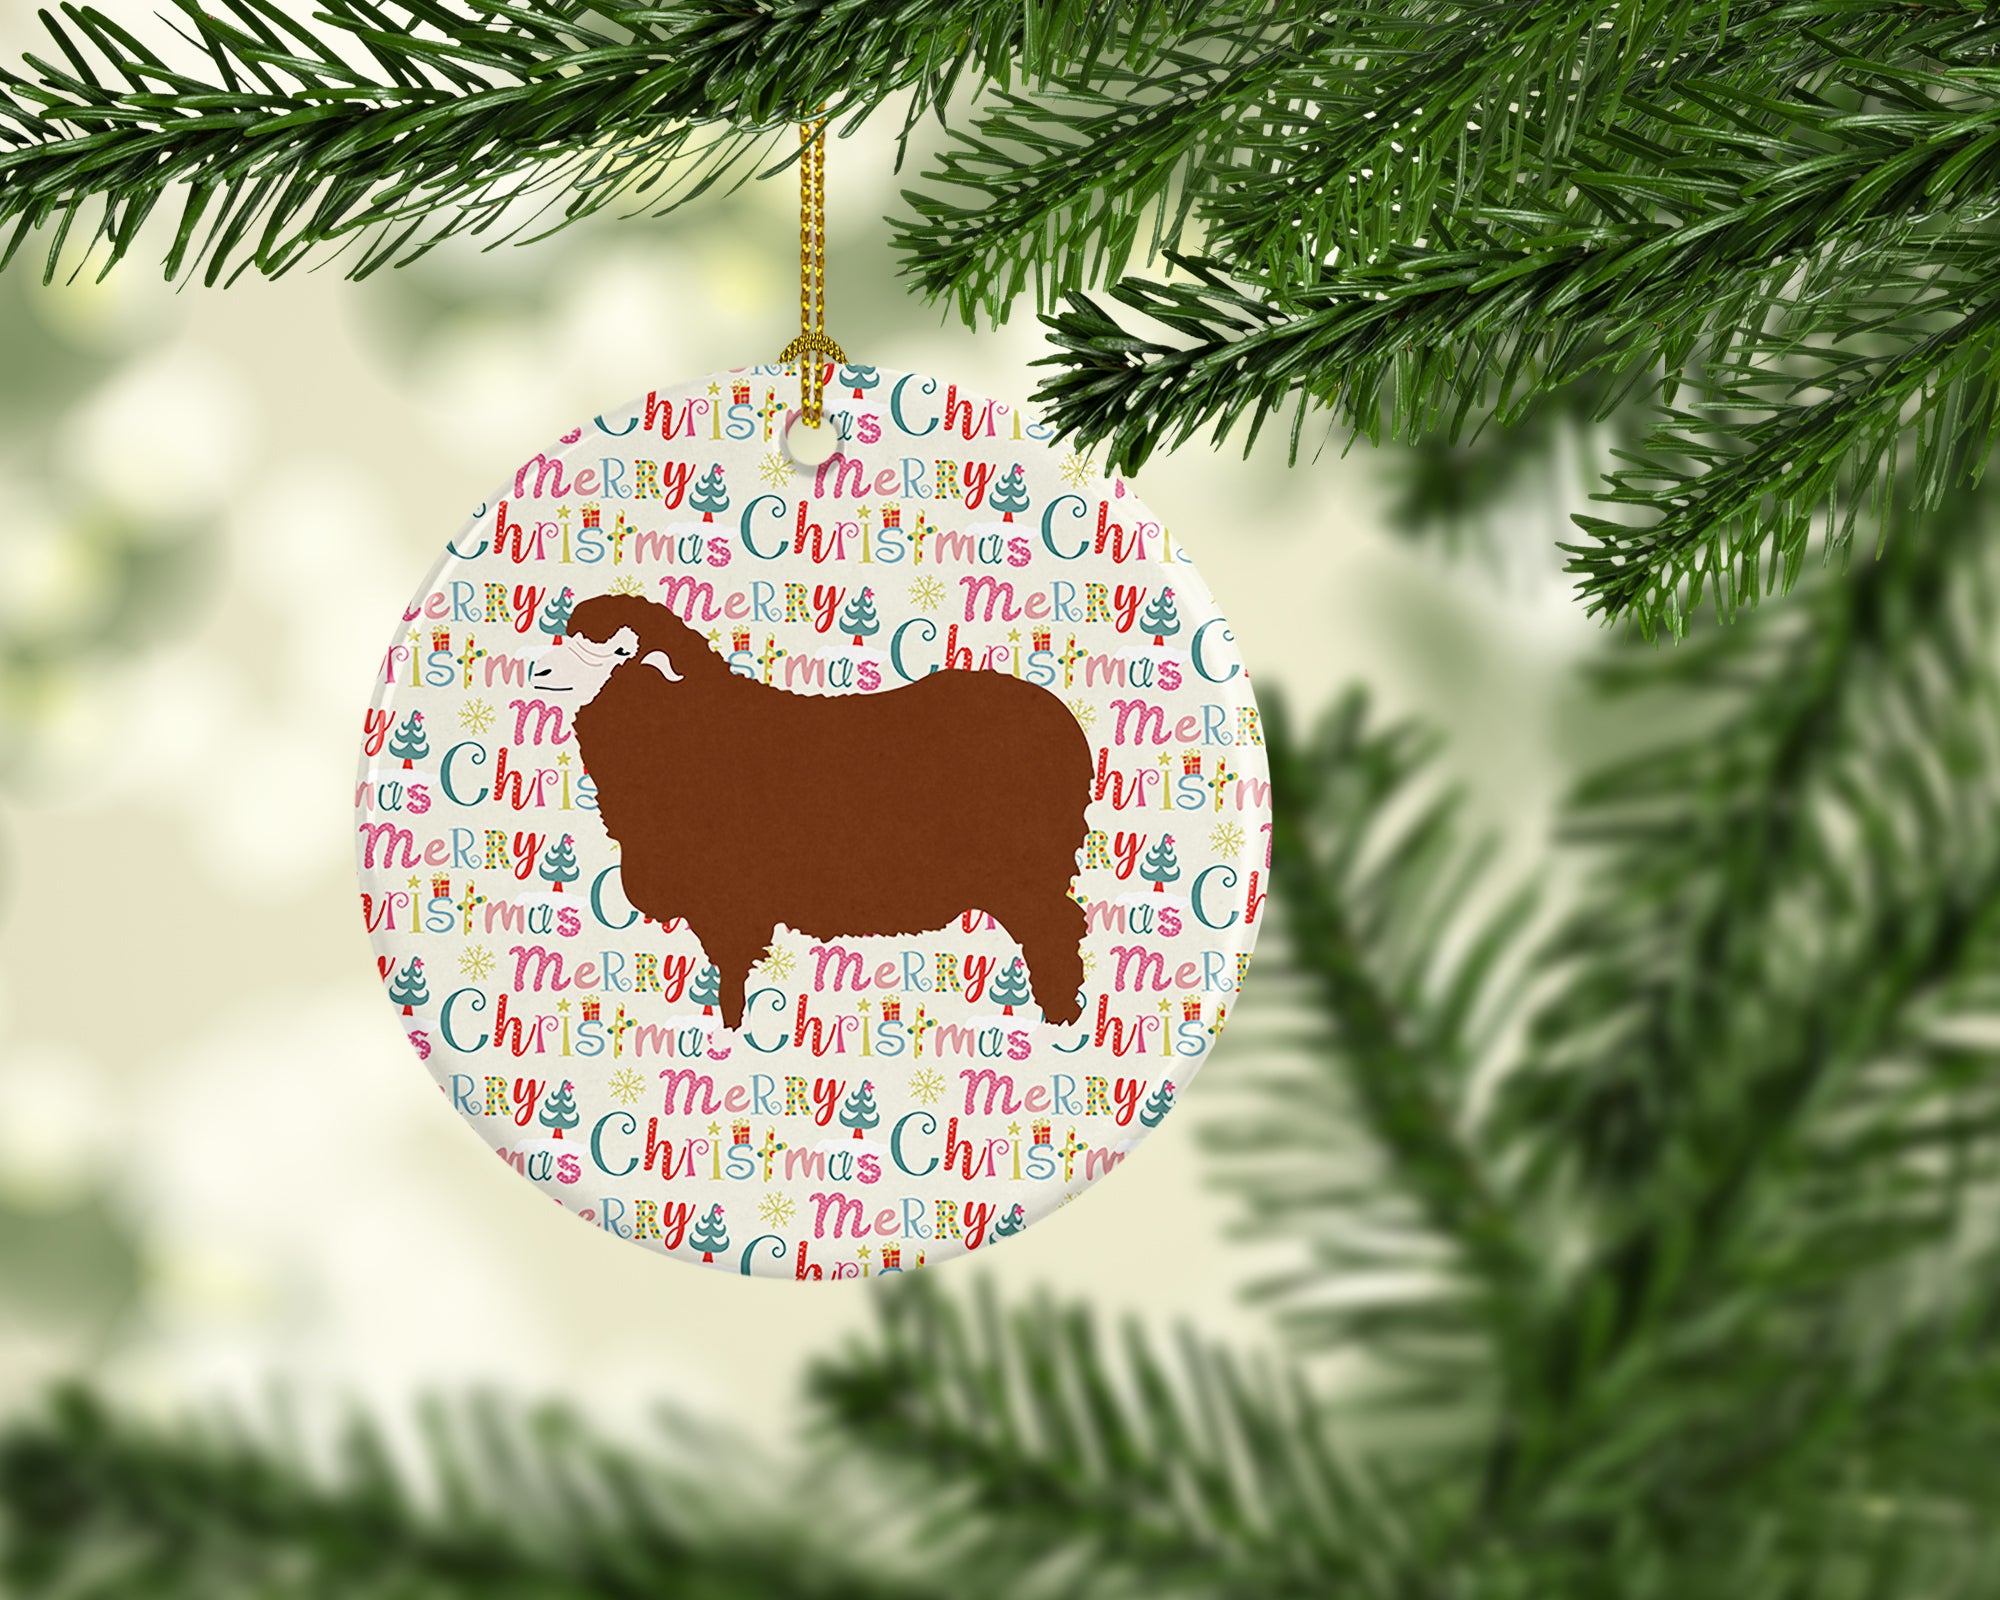 Merino Sheep Christmas Ceramic Ornament - the-store.com